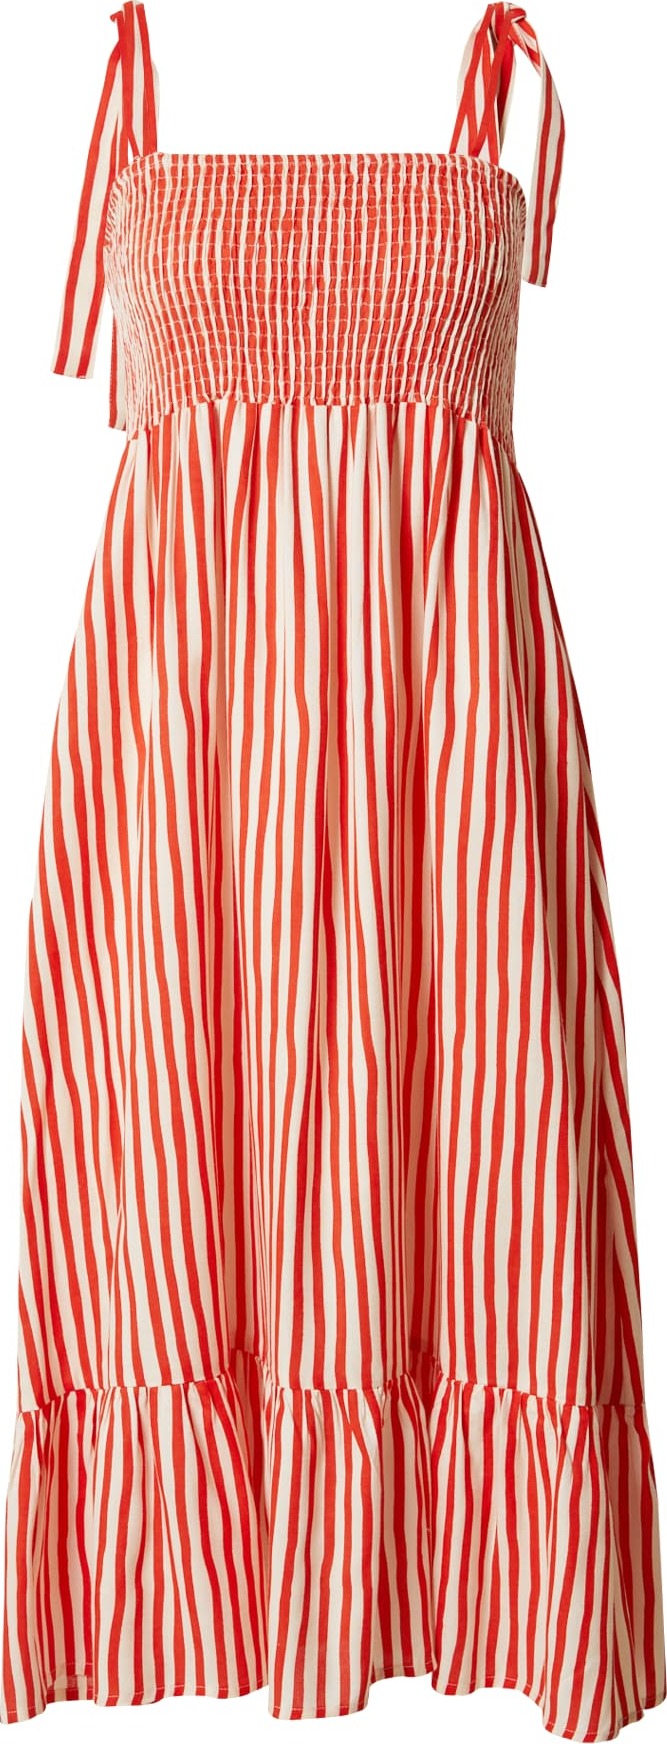 Letní šaty Compania Fantastica oranžově červená / přírodní bílá